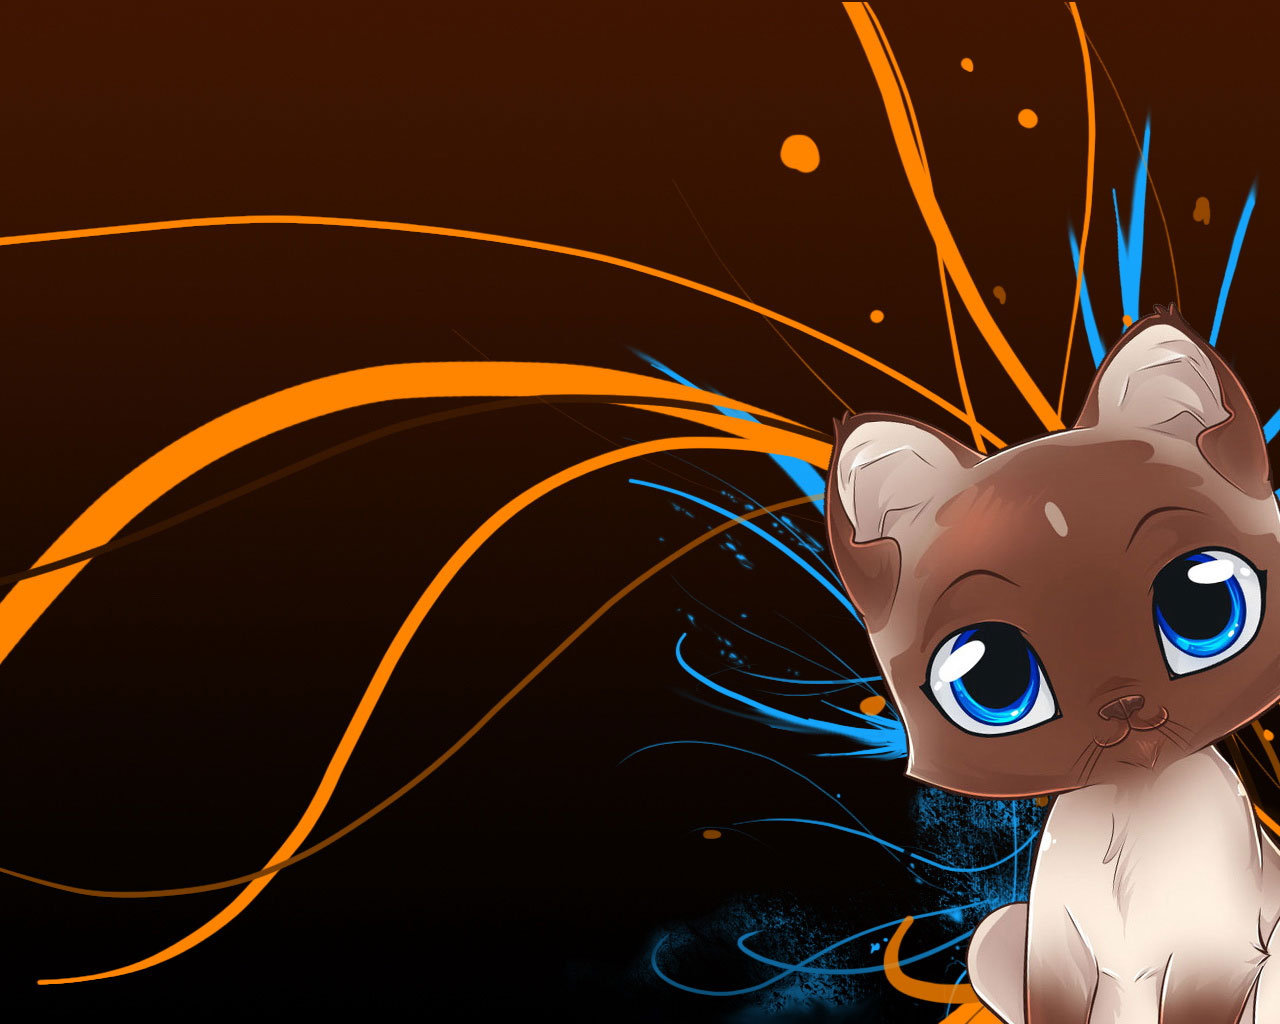 Animated Cat Wallpaper for Desktop - WallpaperSafari